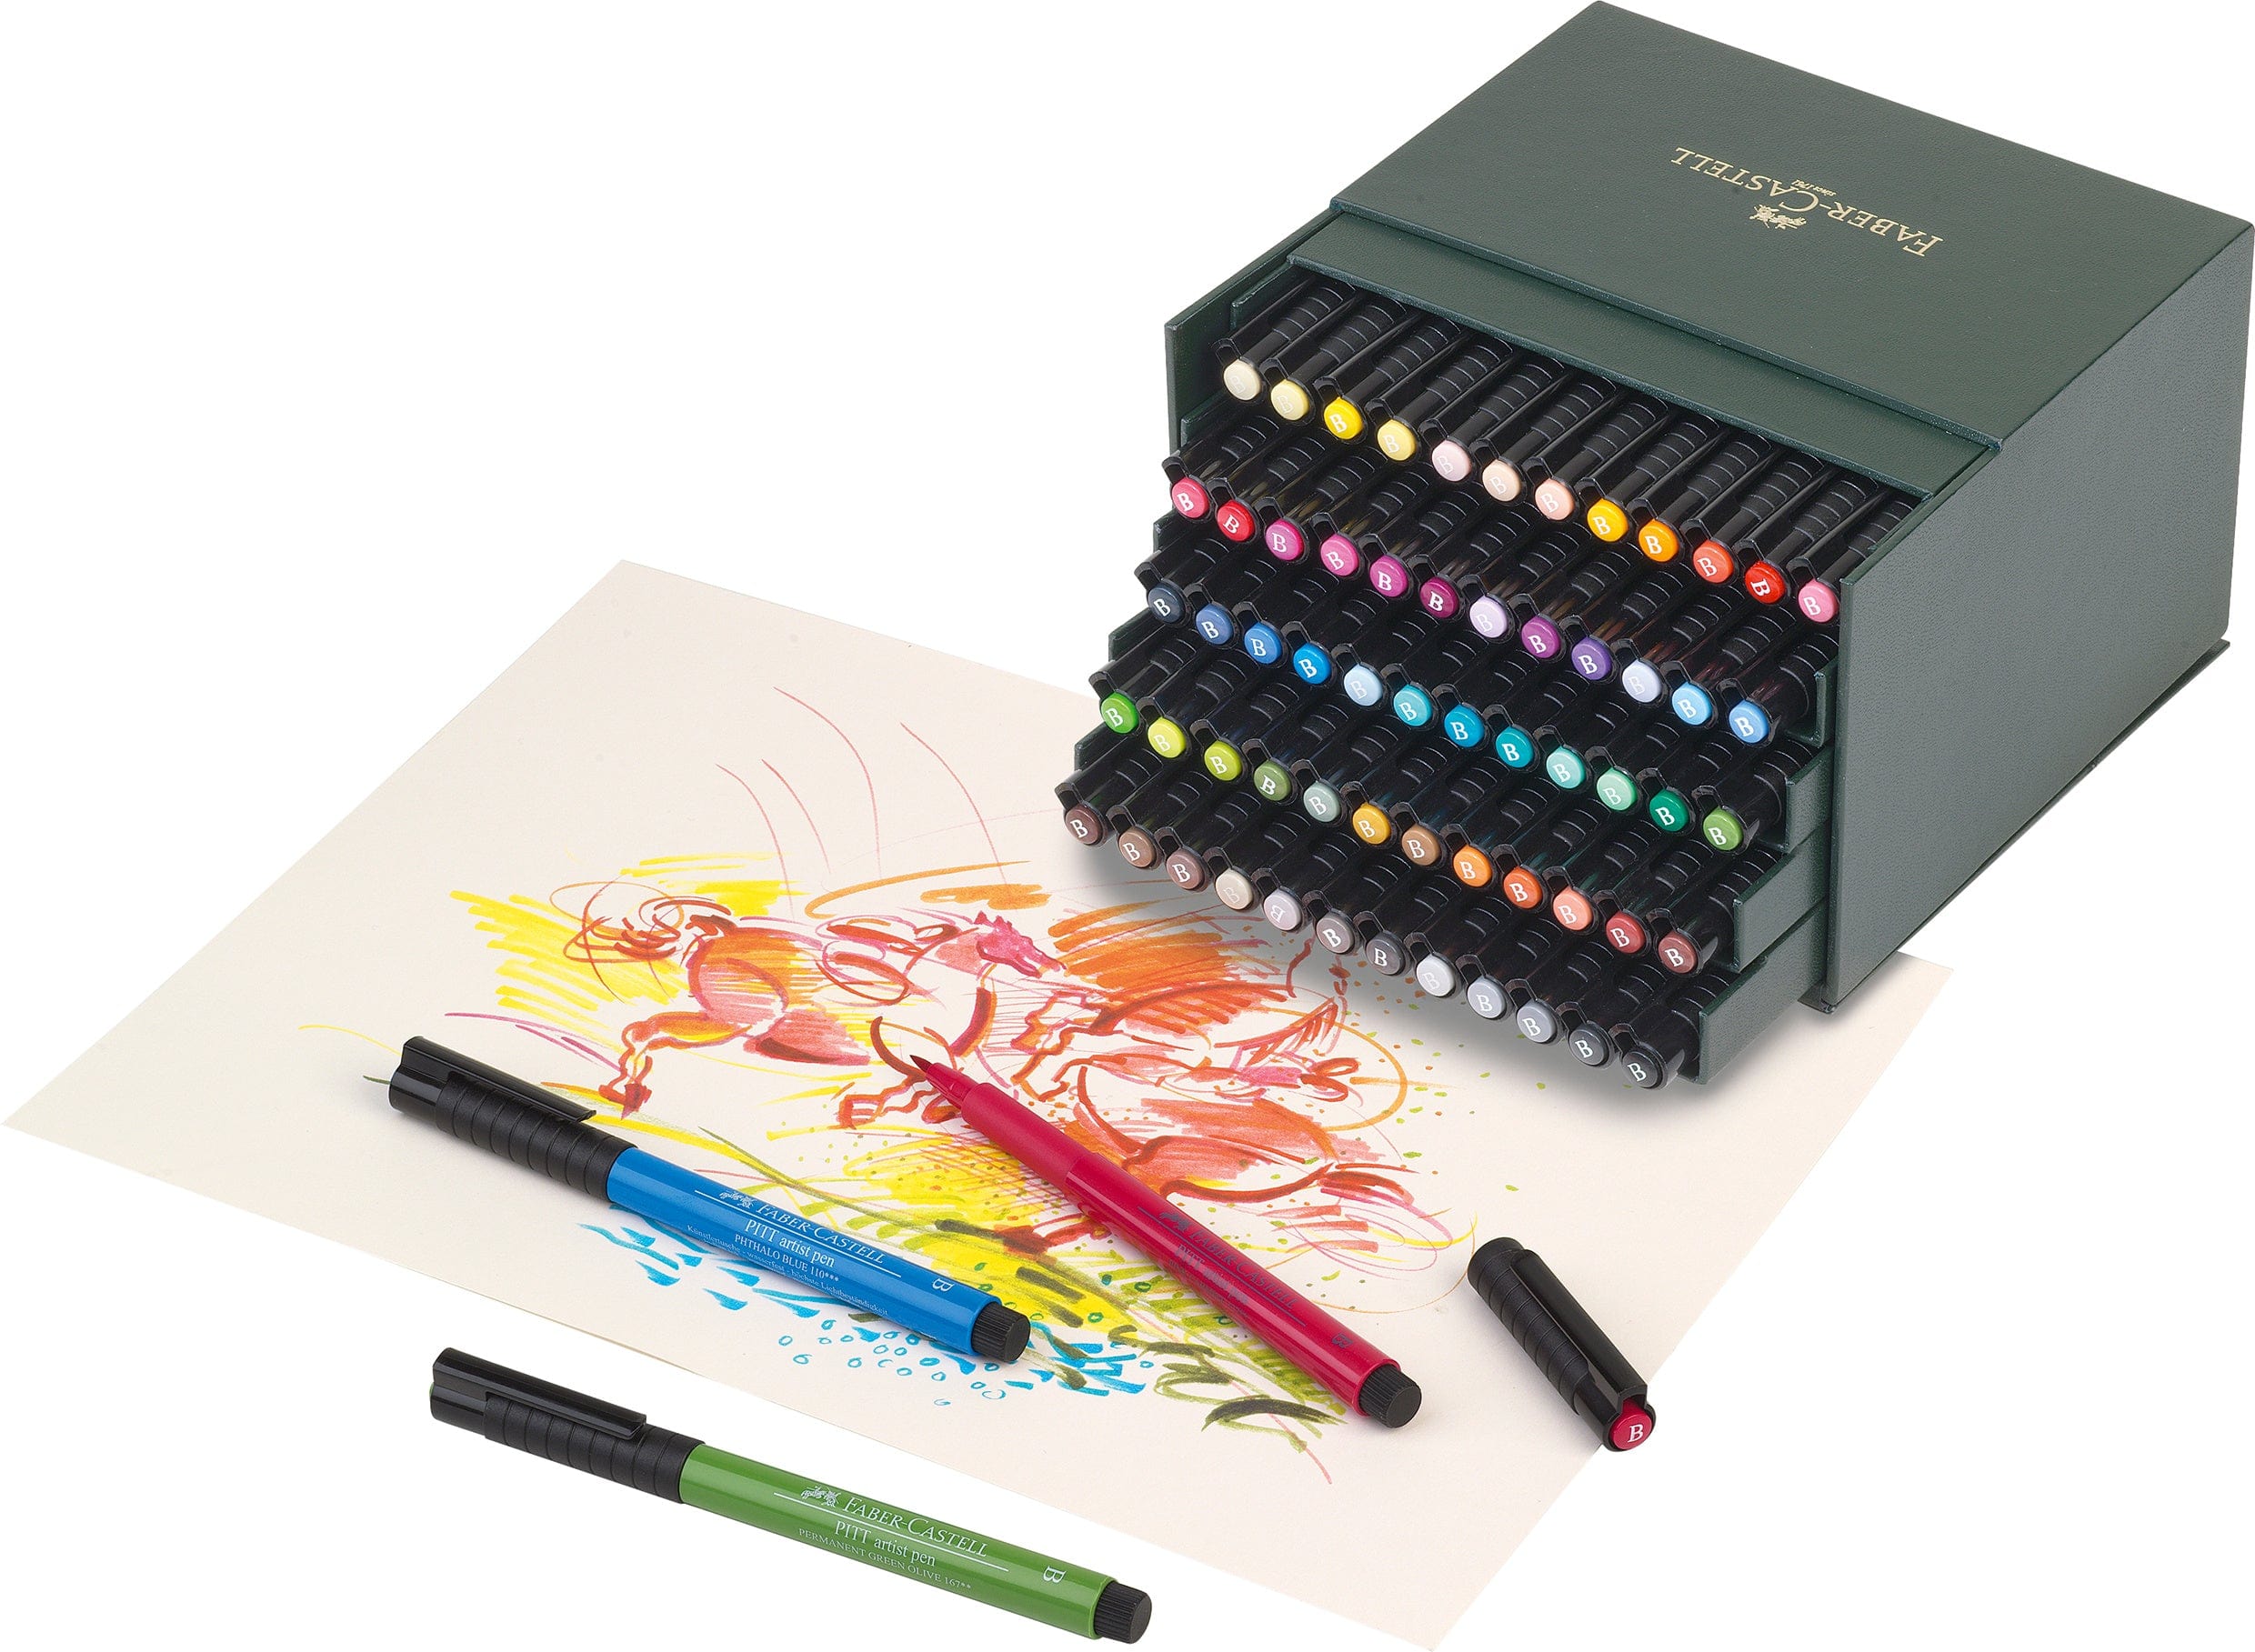 Faber-Castell Tuscher Pitt artist pen brush - 60 farver